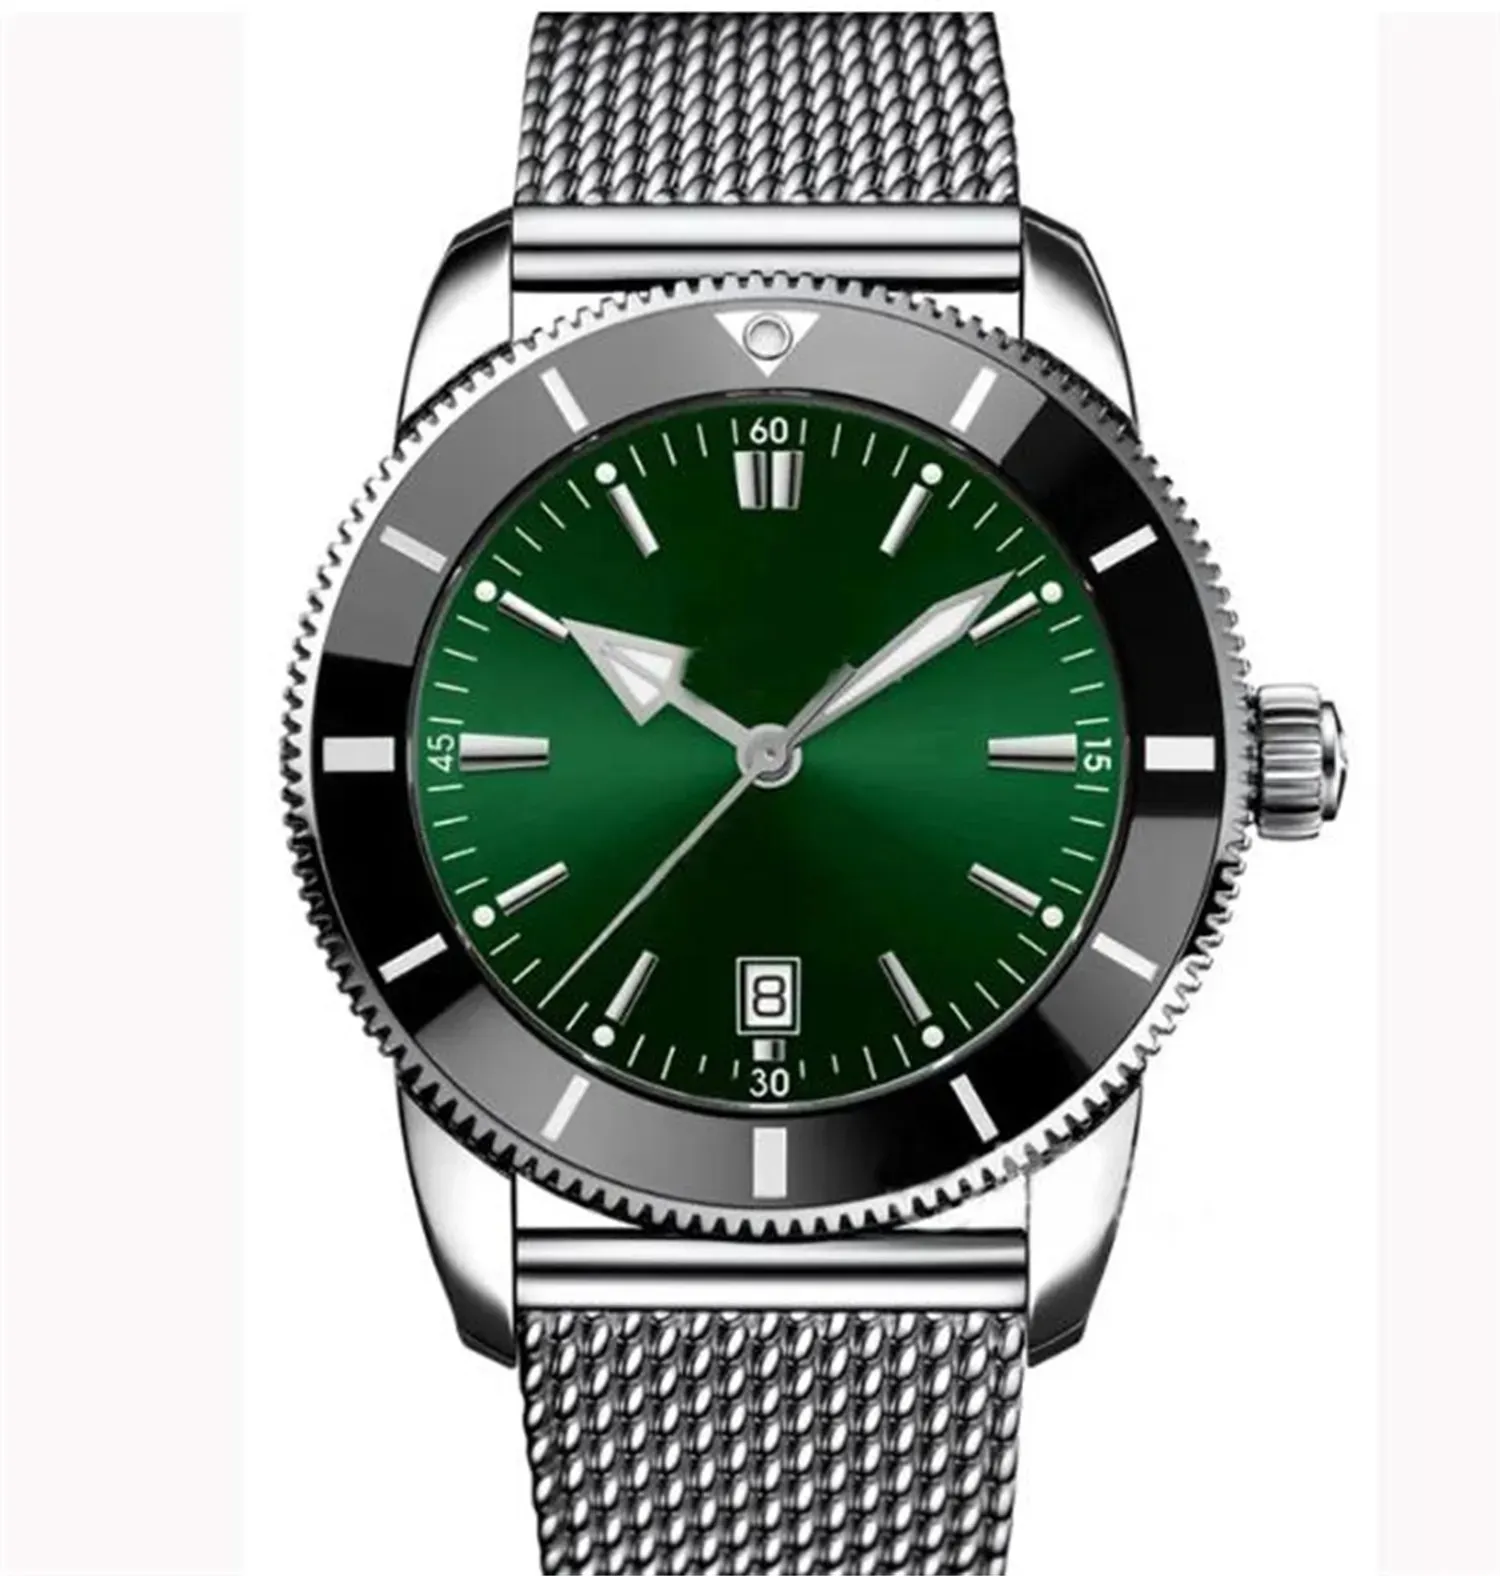 Top AAA Bretiling luxe merk Super Ocean Marine Heritage horloge tweekleurige datum B01 B03 B20 kaliber automatisch mechanisch uurwerk Index 1884 CmnX herenhorloges